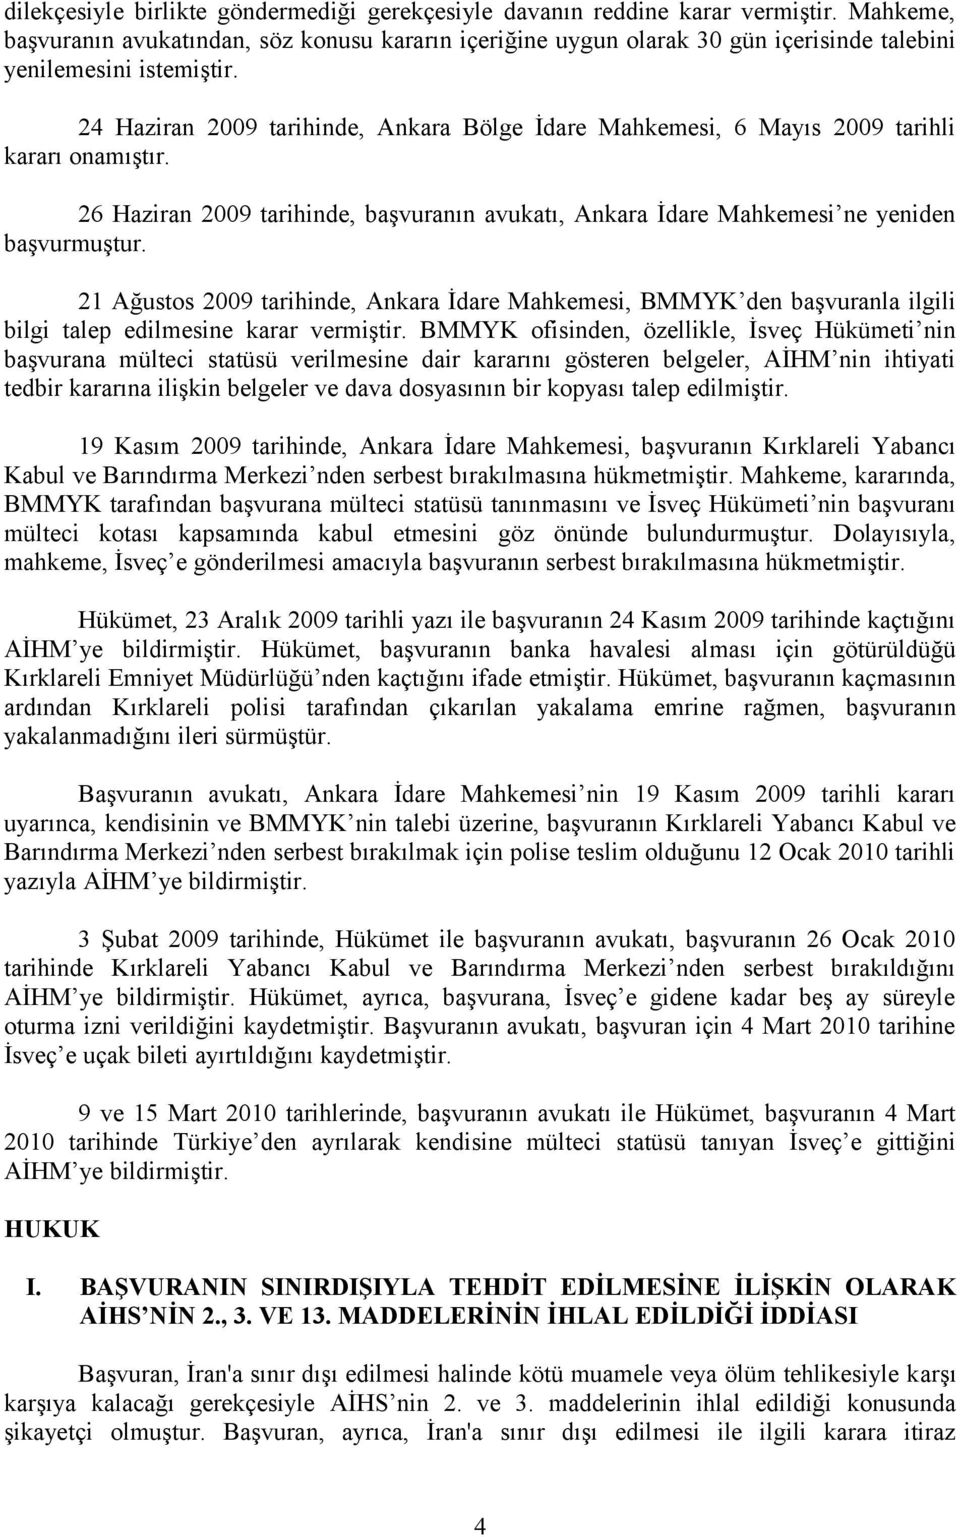 24 Haziran 2009 tarihinde, Ankara Bölge İdare Mahkemesi, 6 Mayıs 2009 tarihli kararı onamıştır. 26 Haziran 2009 tarihinde, başvuranın avukatı, Ankara İdare Mahkemesi ne yeniden başvurmuştur.